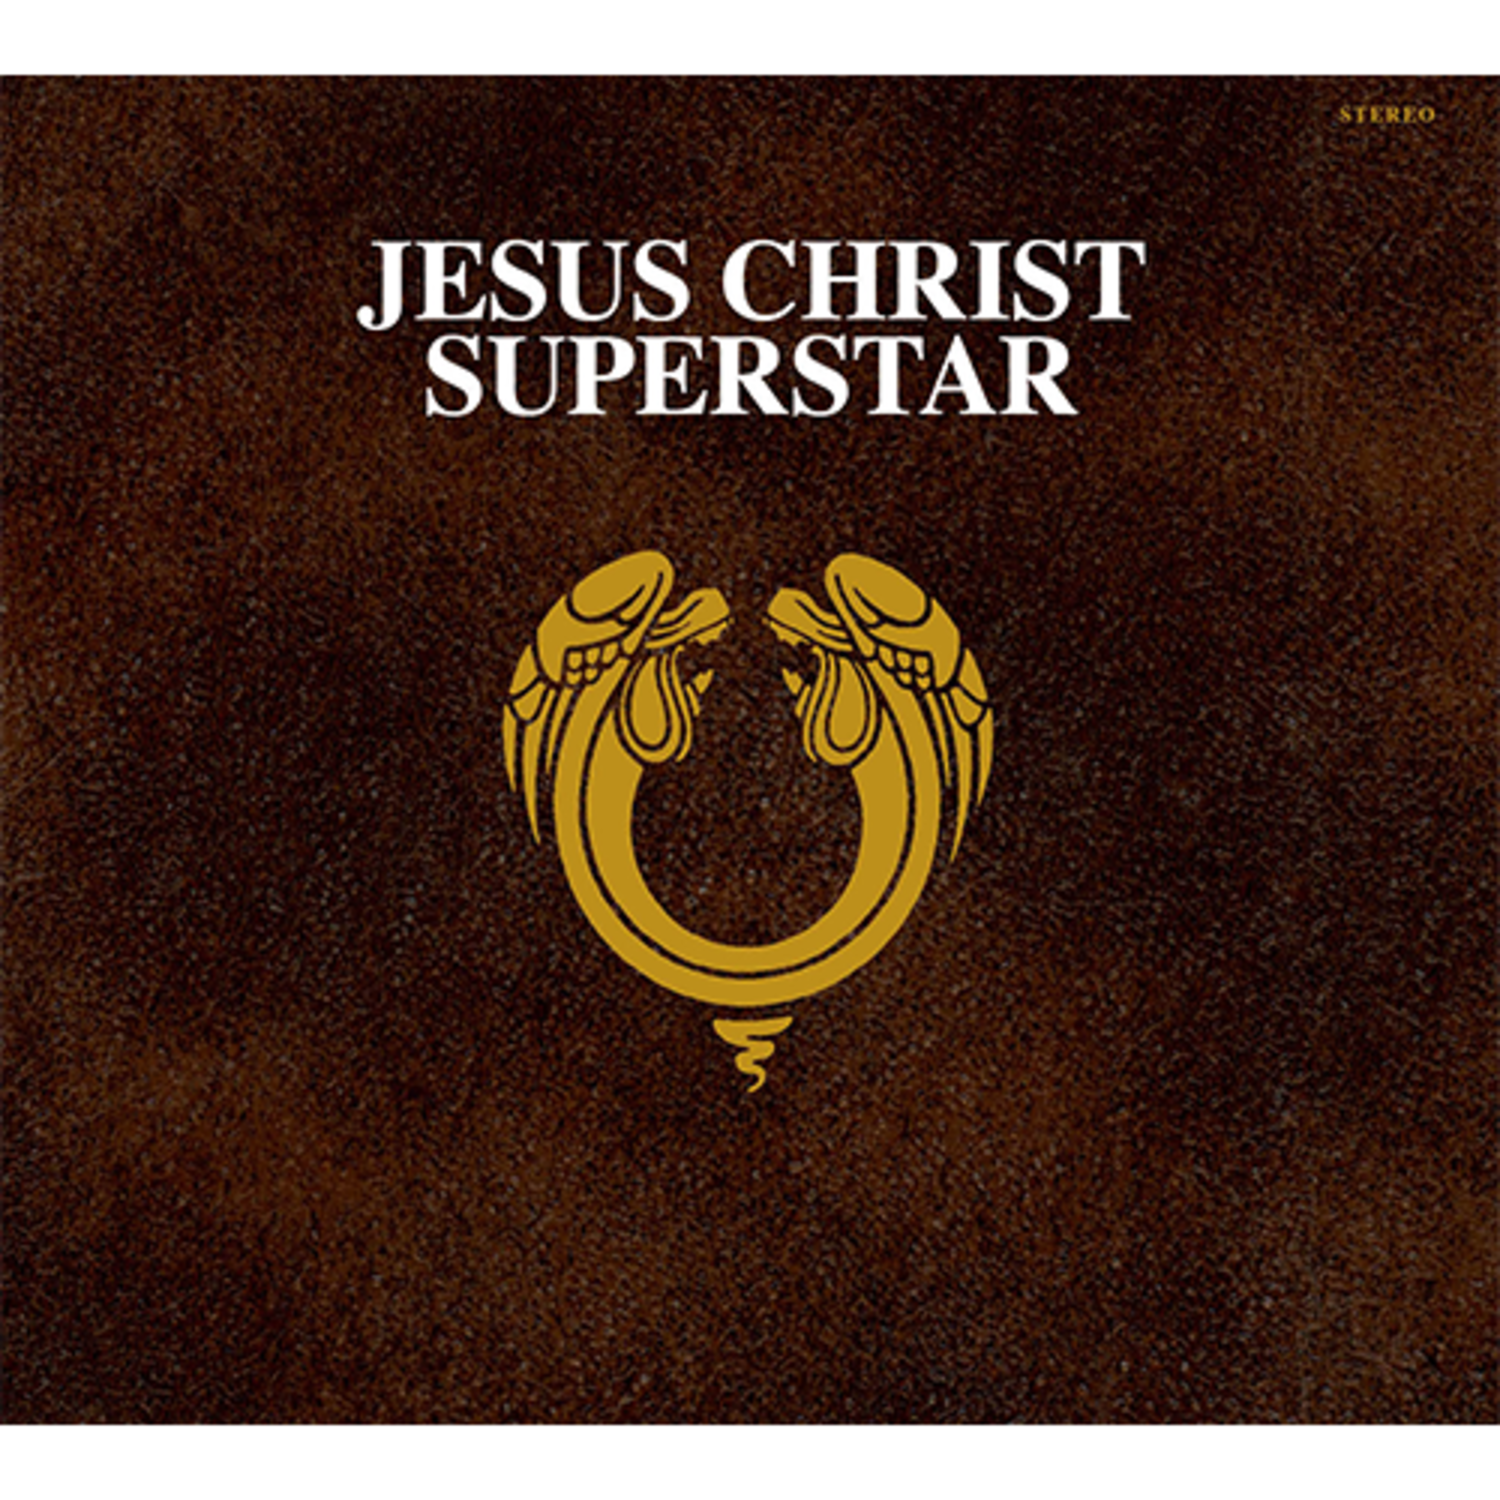 앤드류 로이드 웨버(Andrew Lloyd Webber) - [Jesus Christ Superstar] (50th Anniversary Remastered 2021) (2CD)